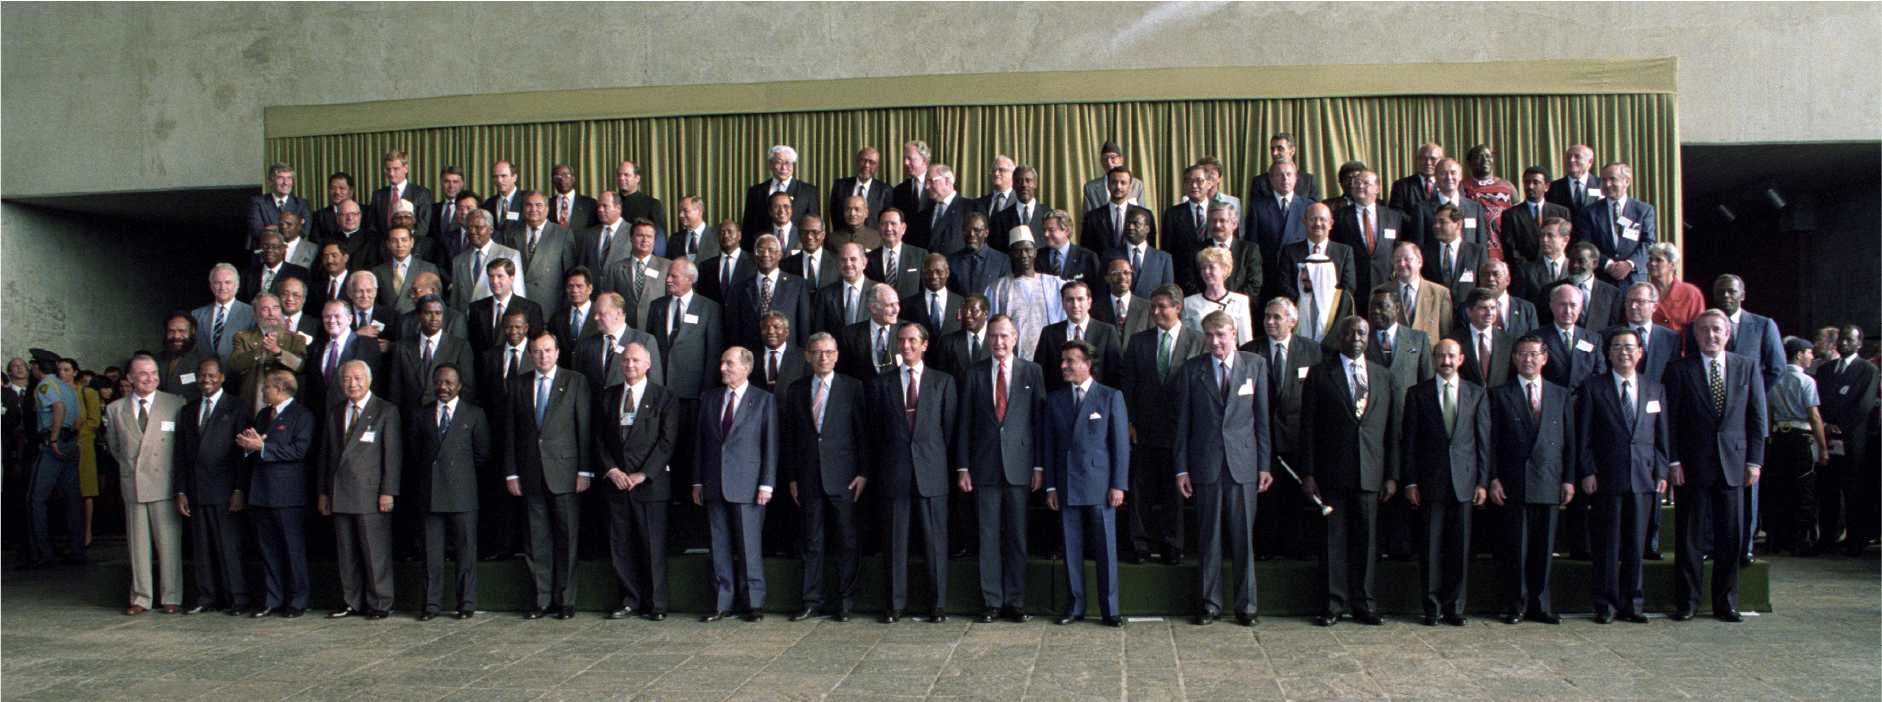 Earth Summit, world leaders, 1992